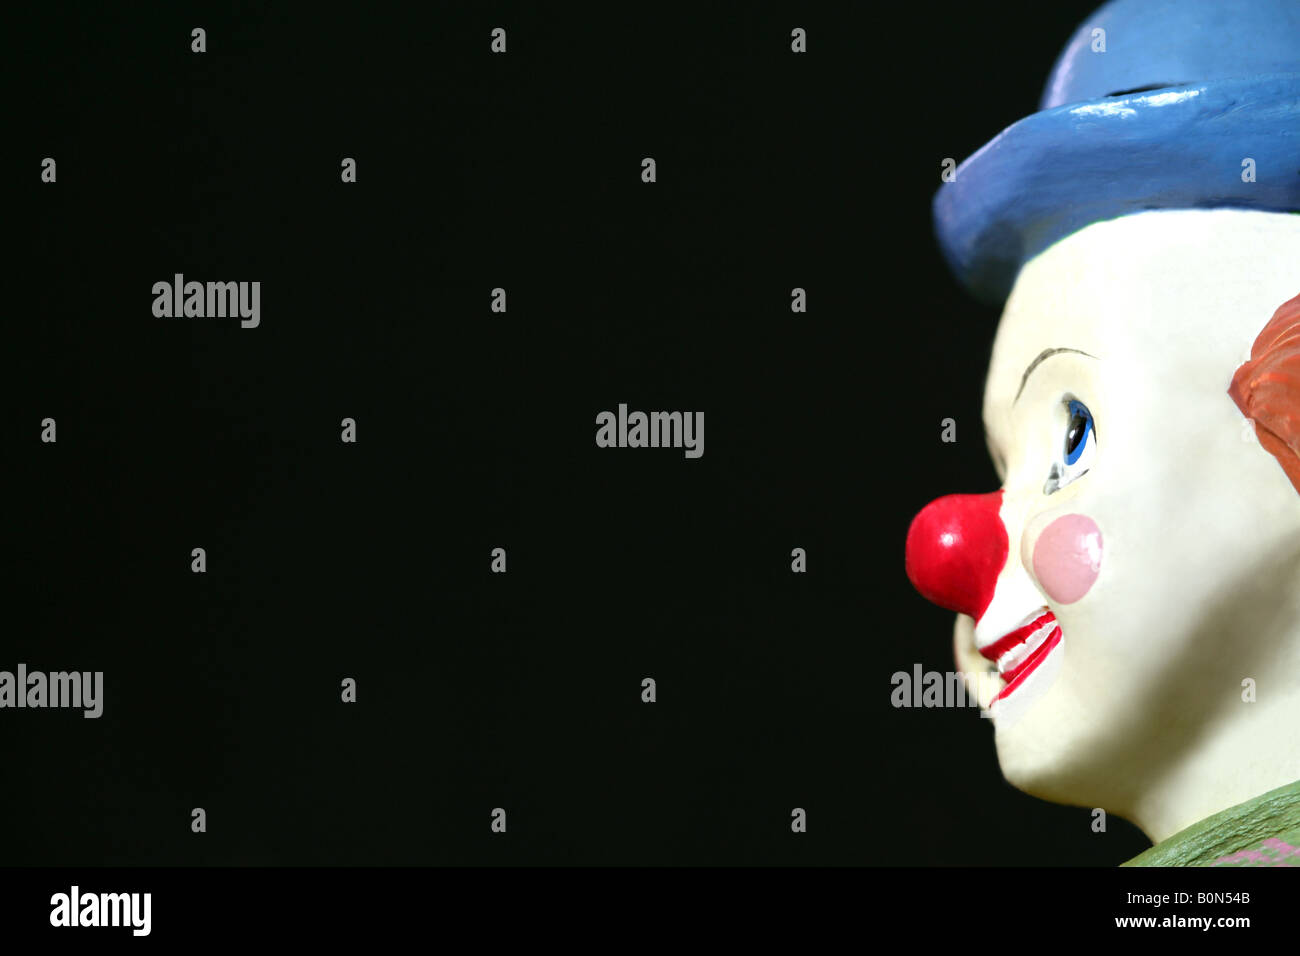 Vue latérale d'un jouet face de clown sur un fond sombre Banque D'Images